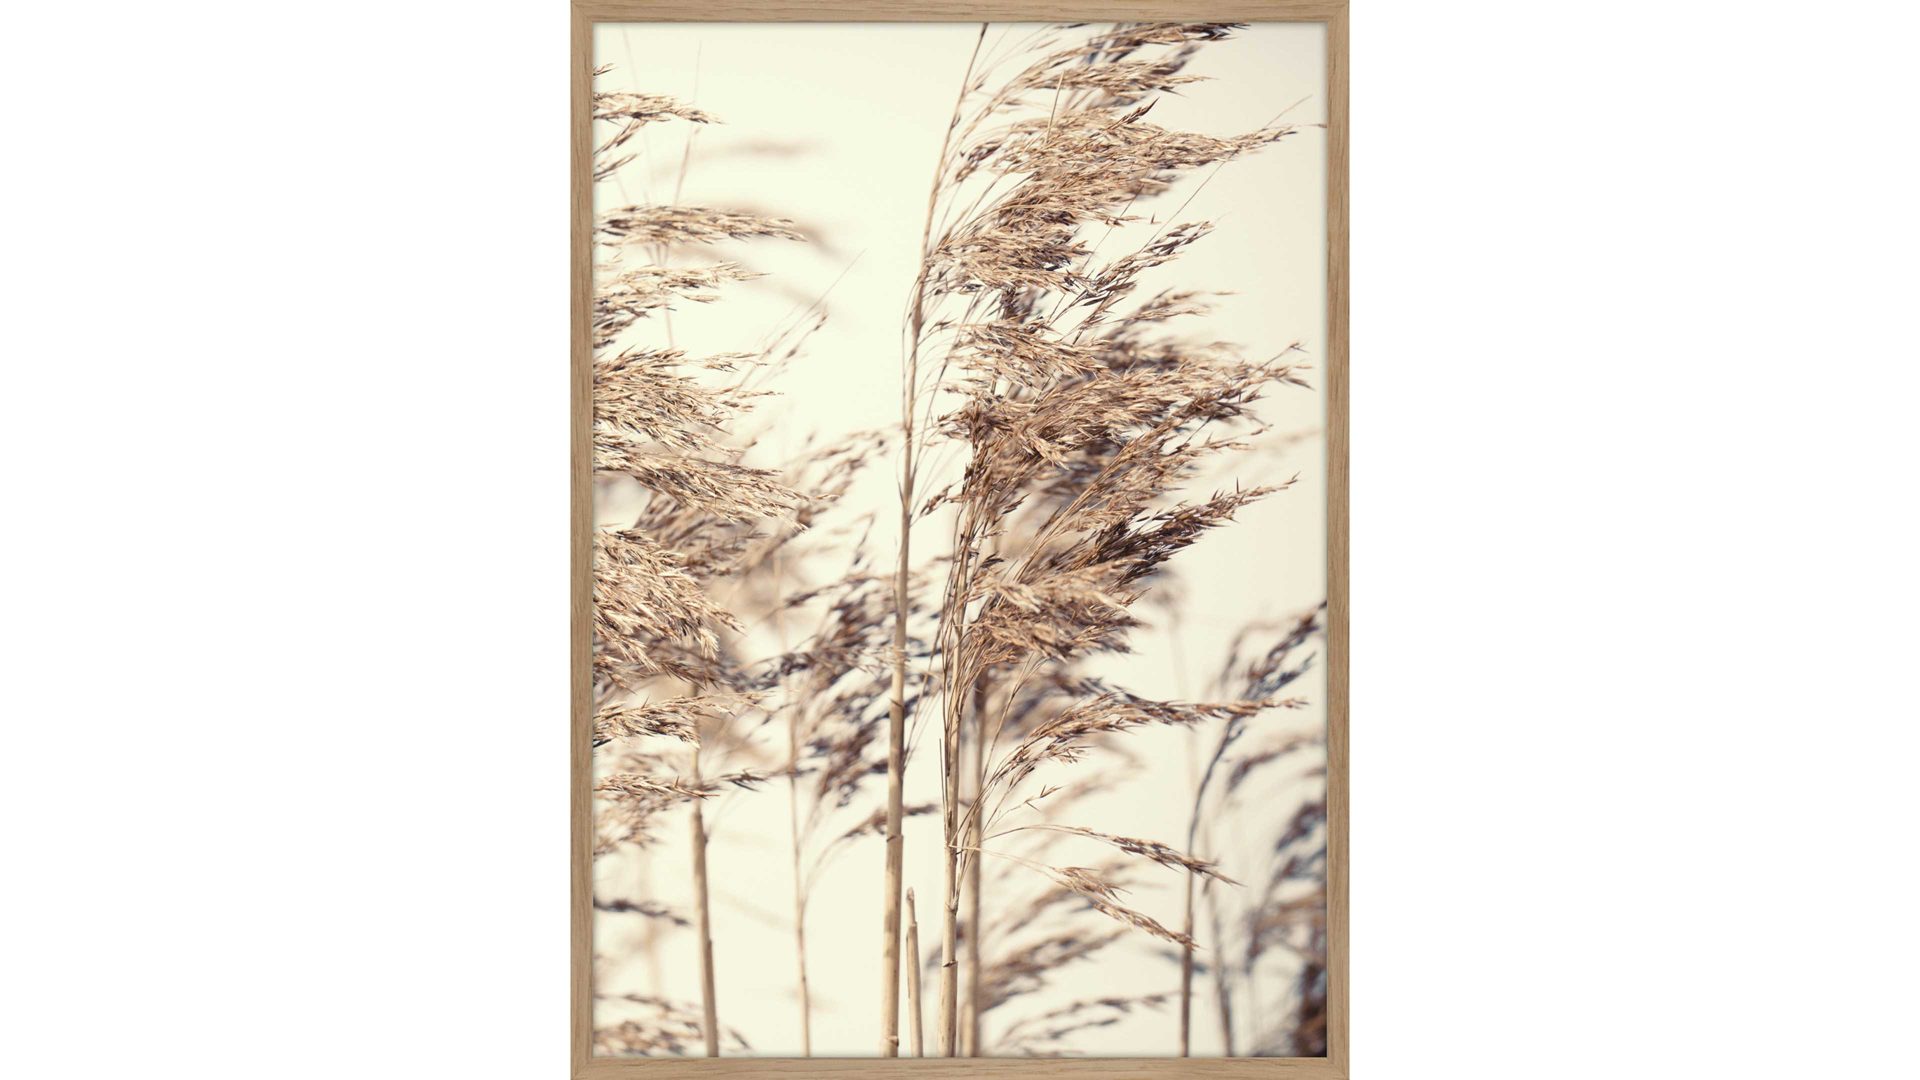 Kunstdruck Malerifabrikken aus Holz in Holzfarben Posterdruck Reed 1 bedrucktes Papier & Eiche – ca. 30 x 40 cm